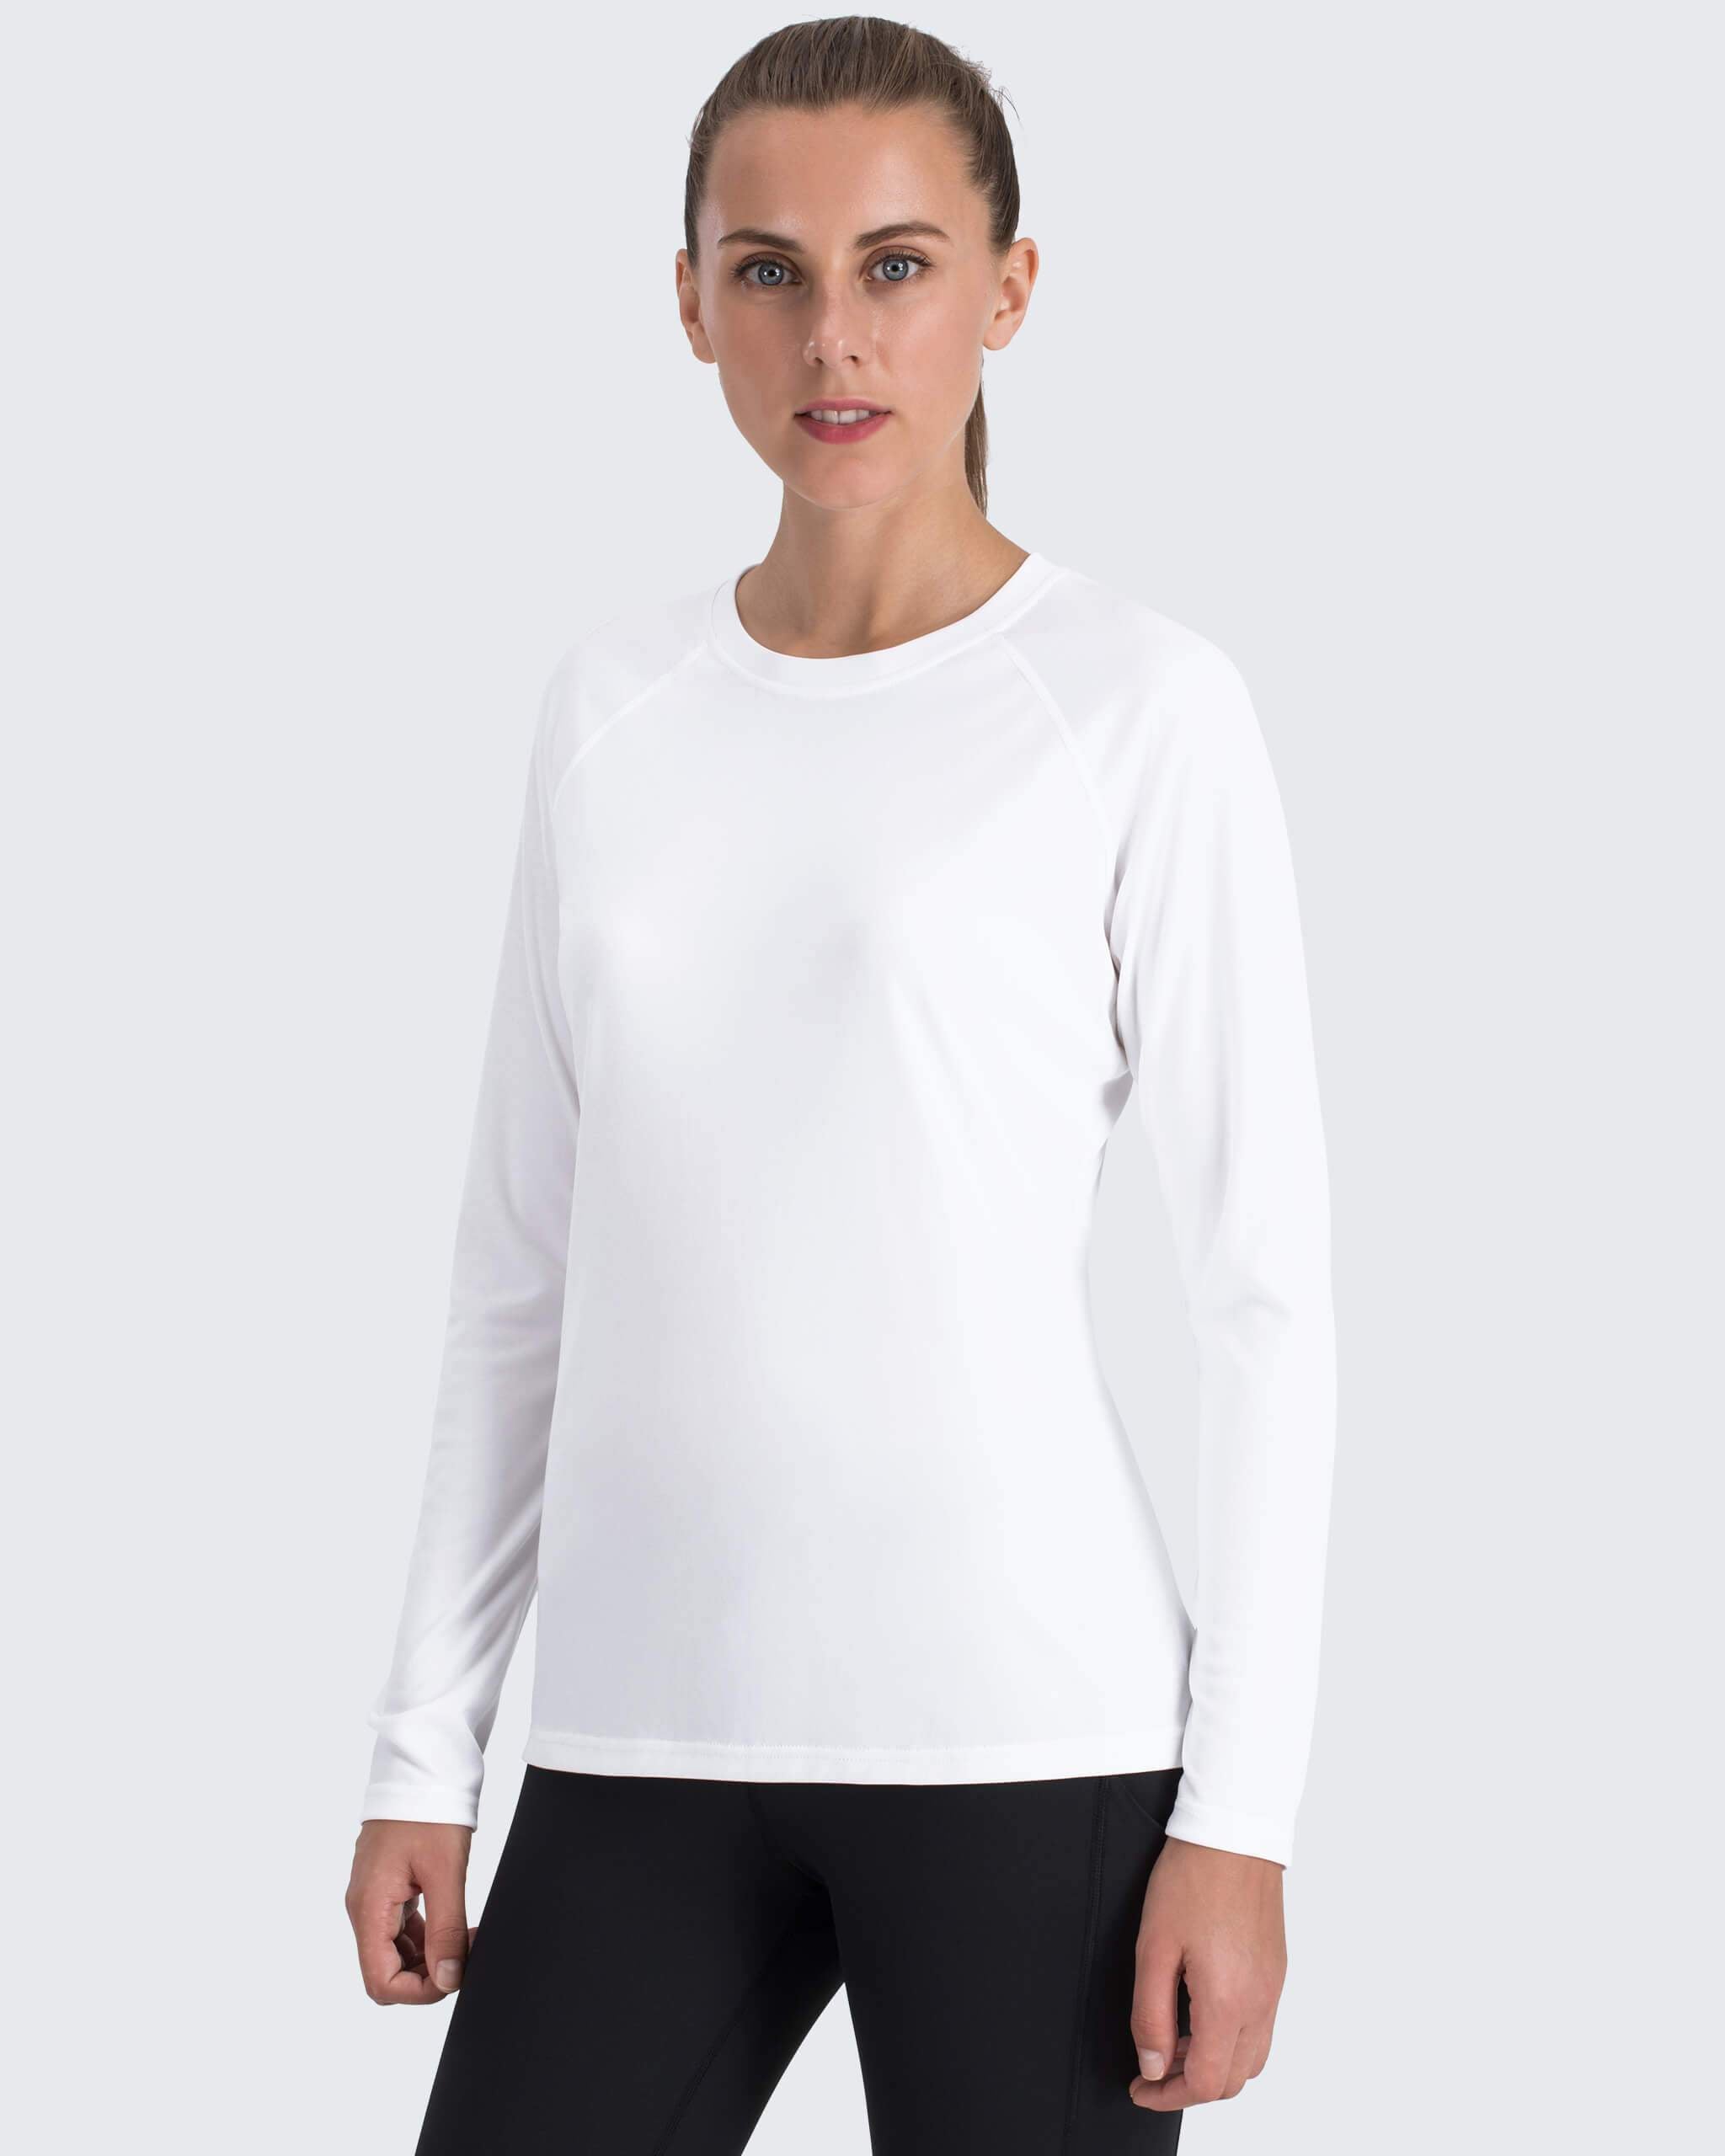 New Ladyfish UPF long sleeve shirt - White/grey